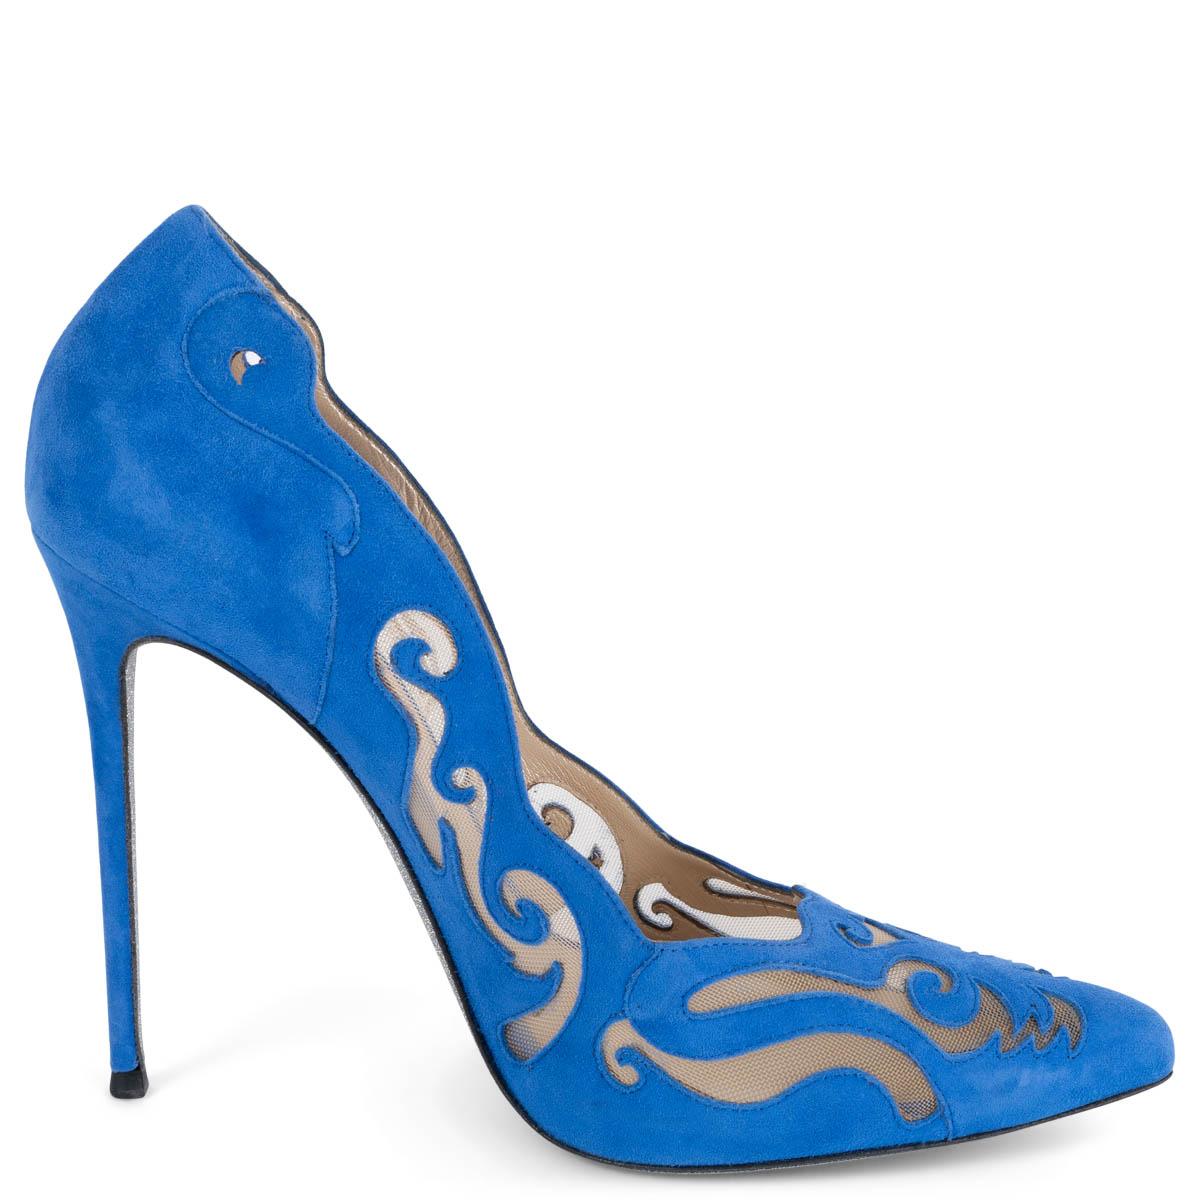 Blue RENE CAOVILLA cobalt blue suede ILLUSION LASER-CUT Pumps Shoes 38.5 For Sale